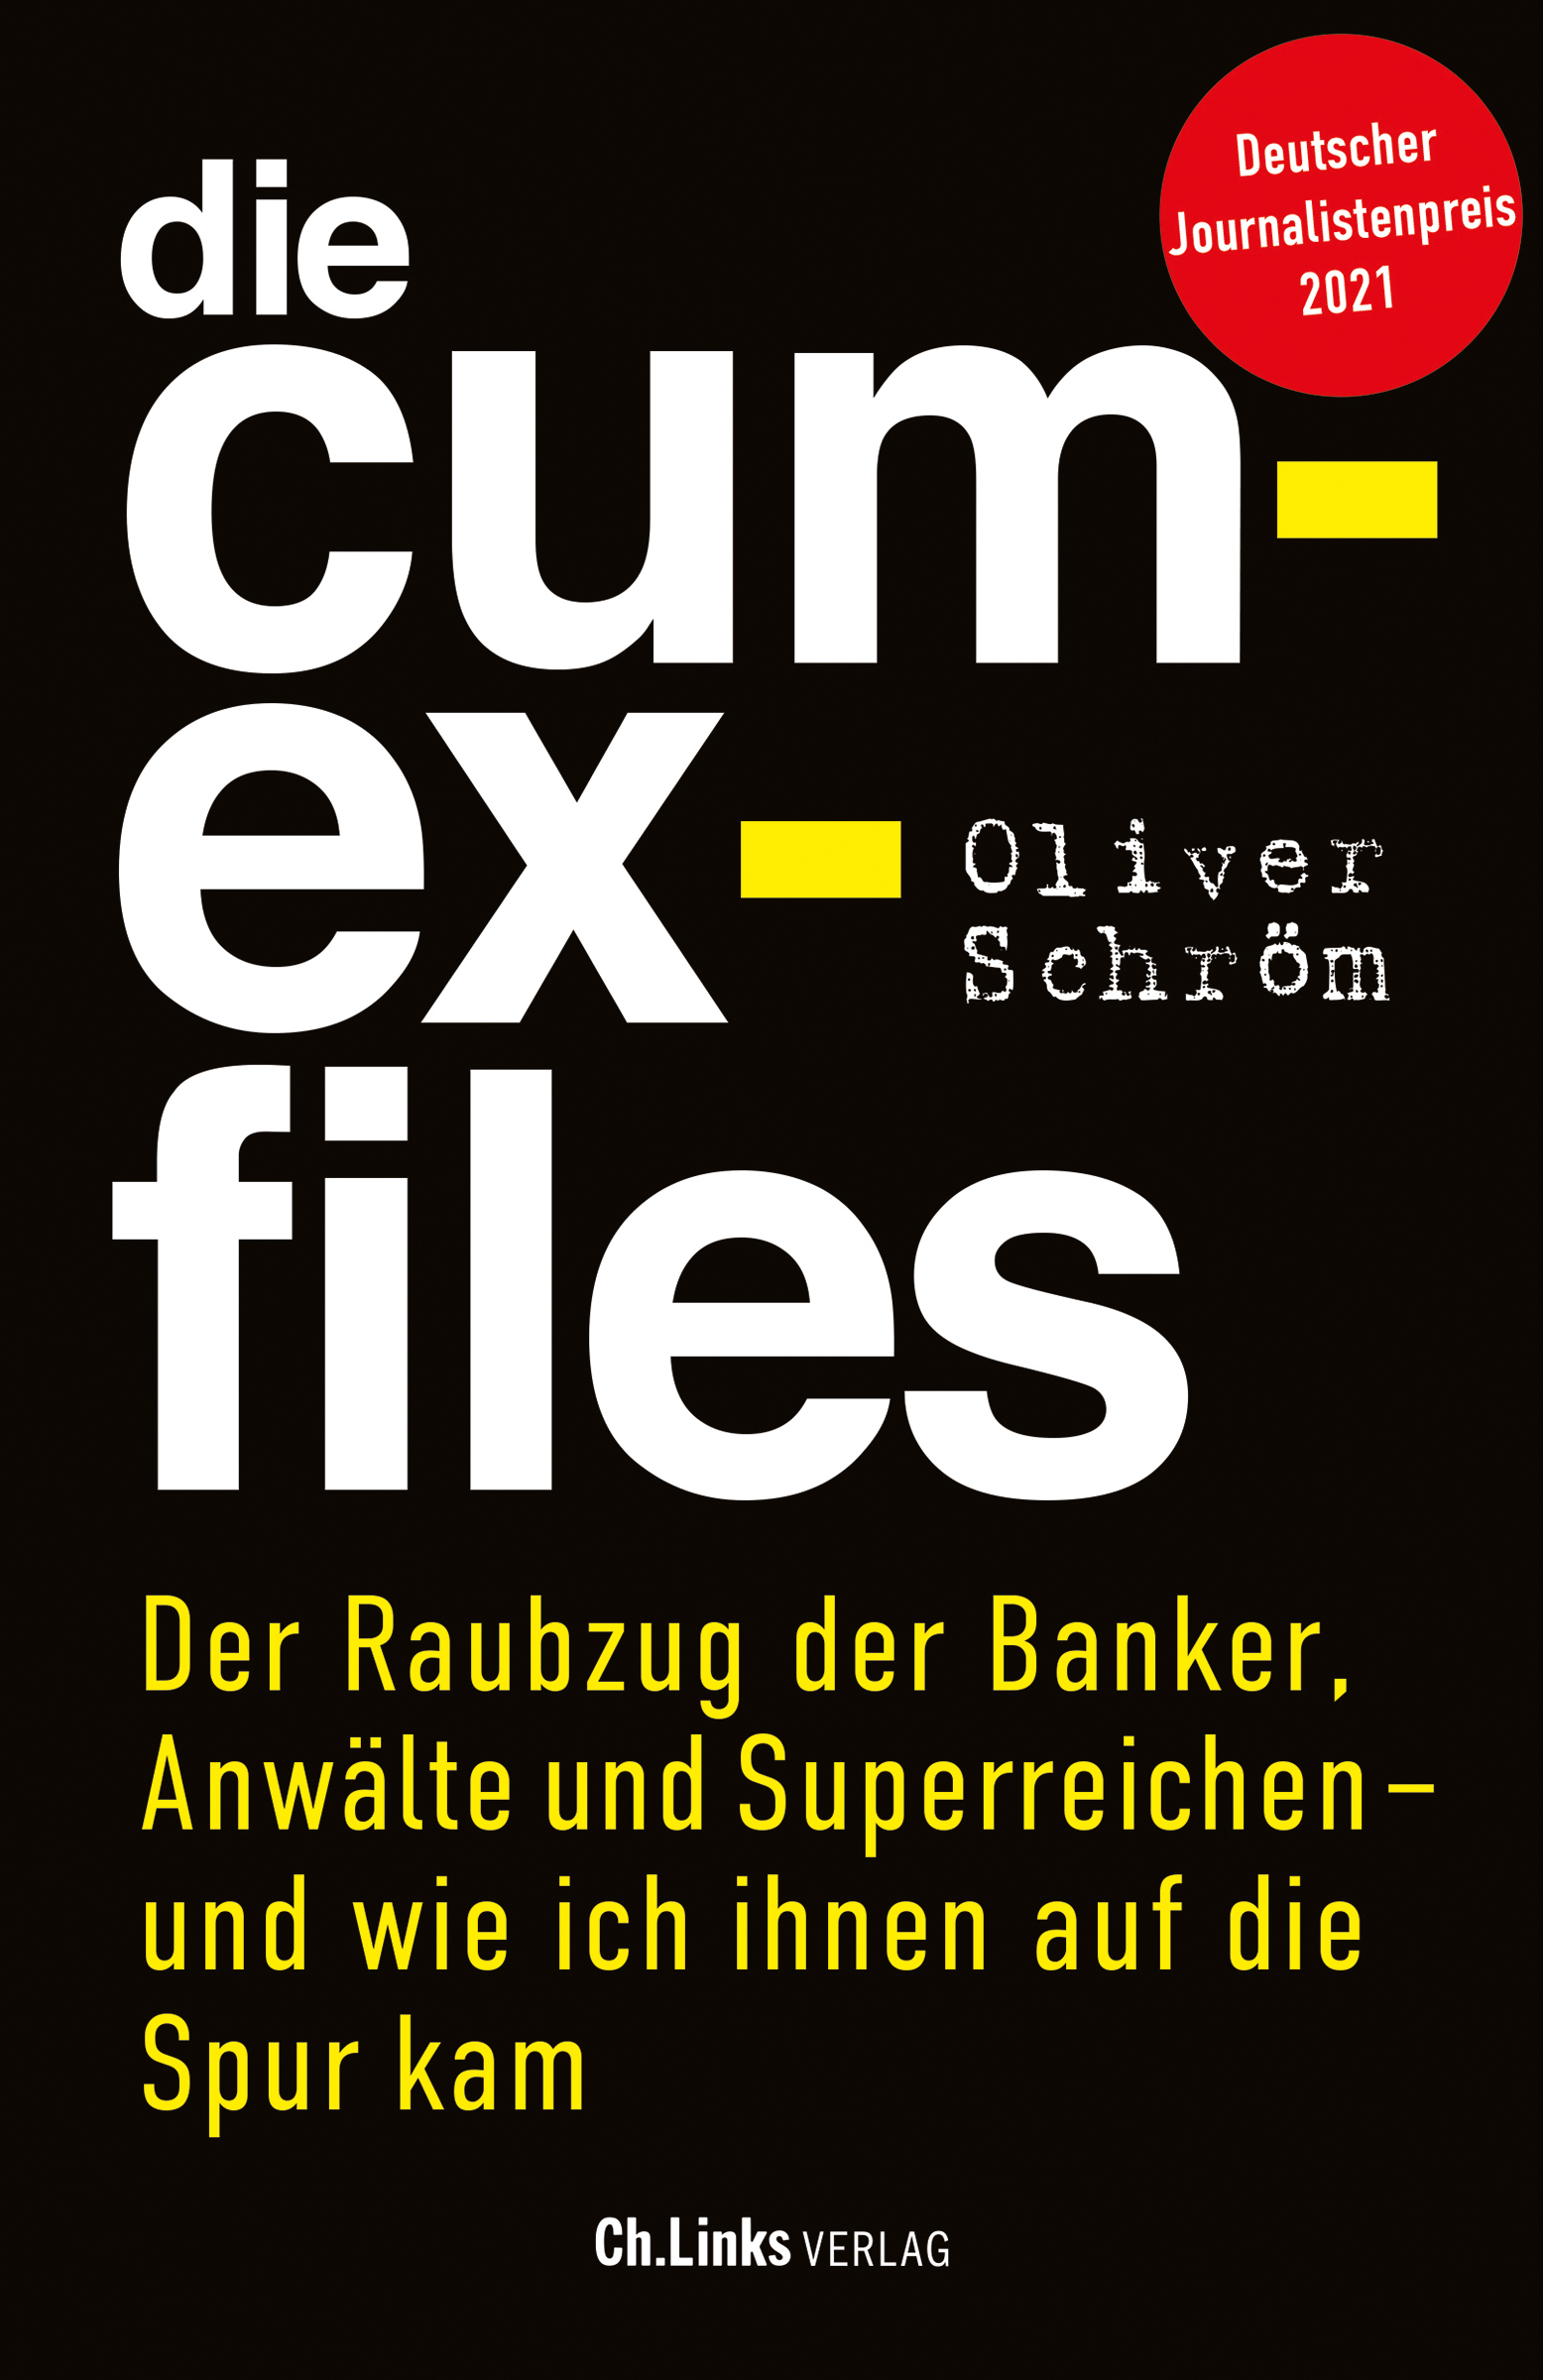 Cover-Cum-Ex-Files